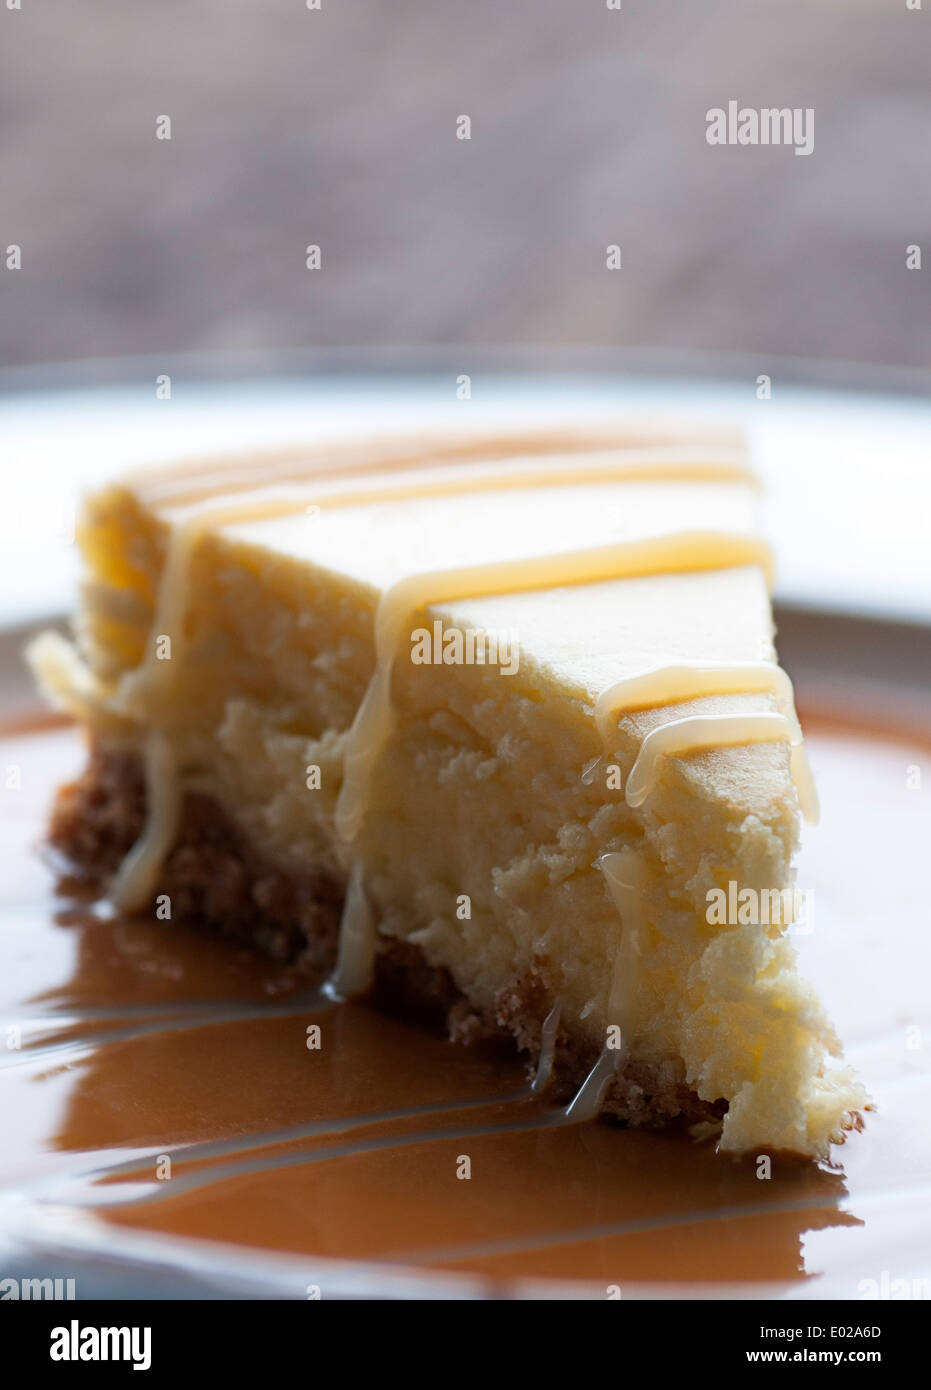 Cheesecake con salsa de caramelo y chocolate blanco Foto de stock